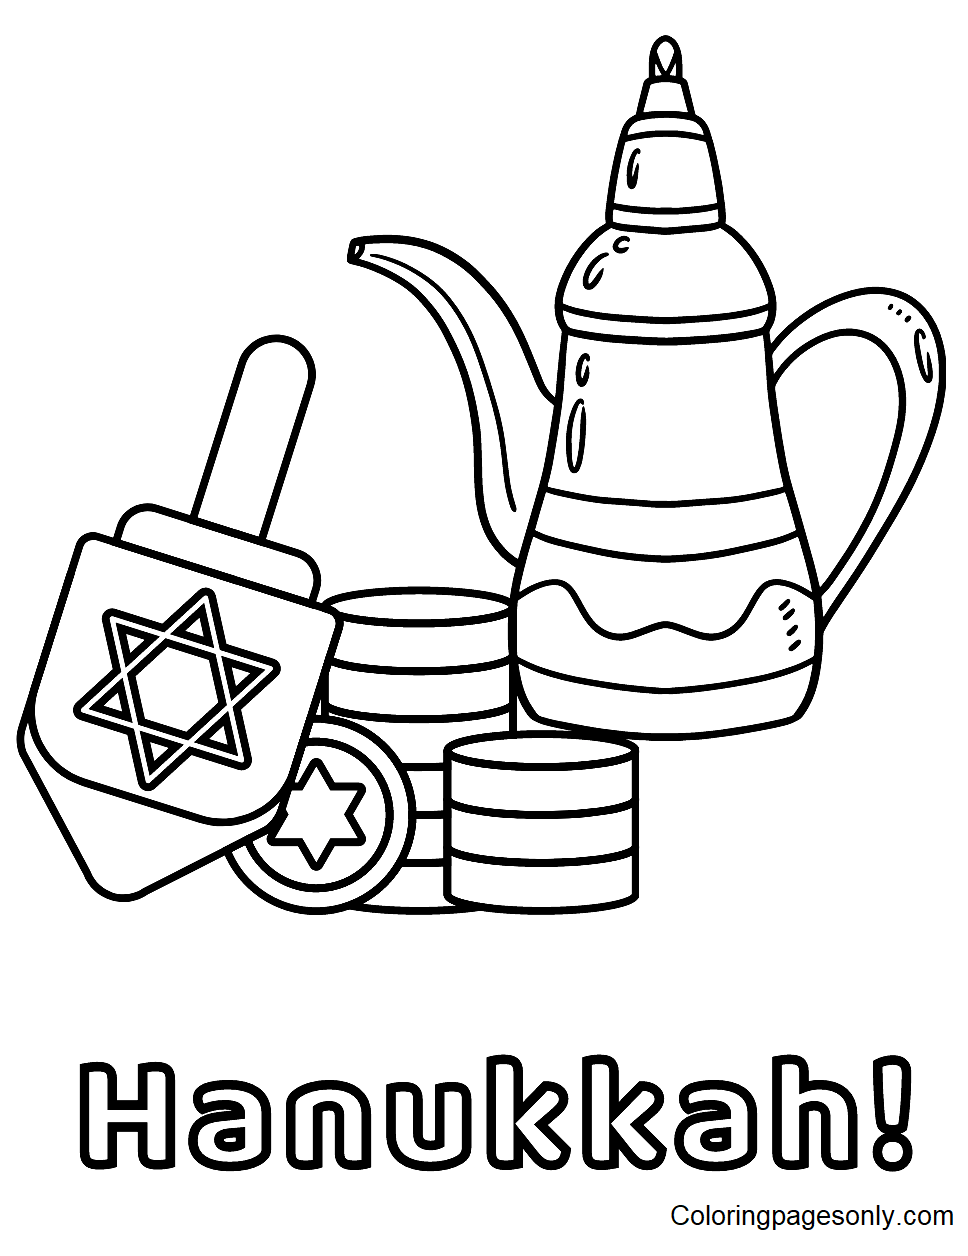 Hanukkah Tea Pot with Dreidel Coloring Pages